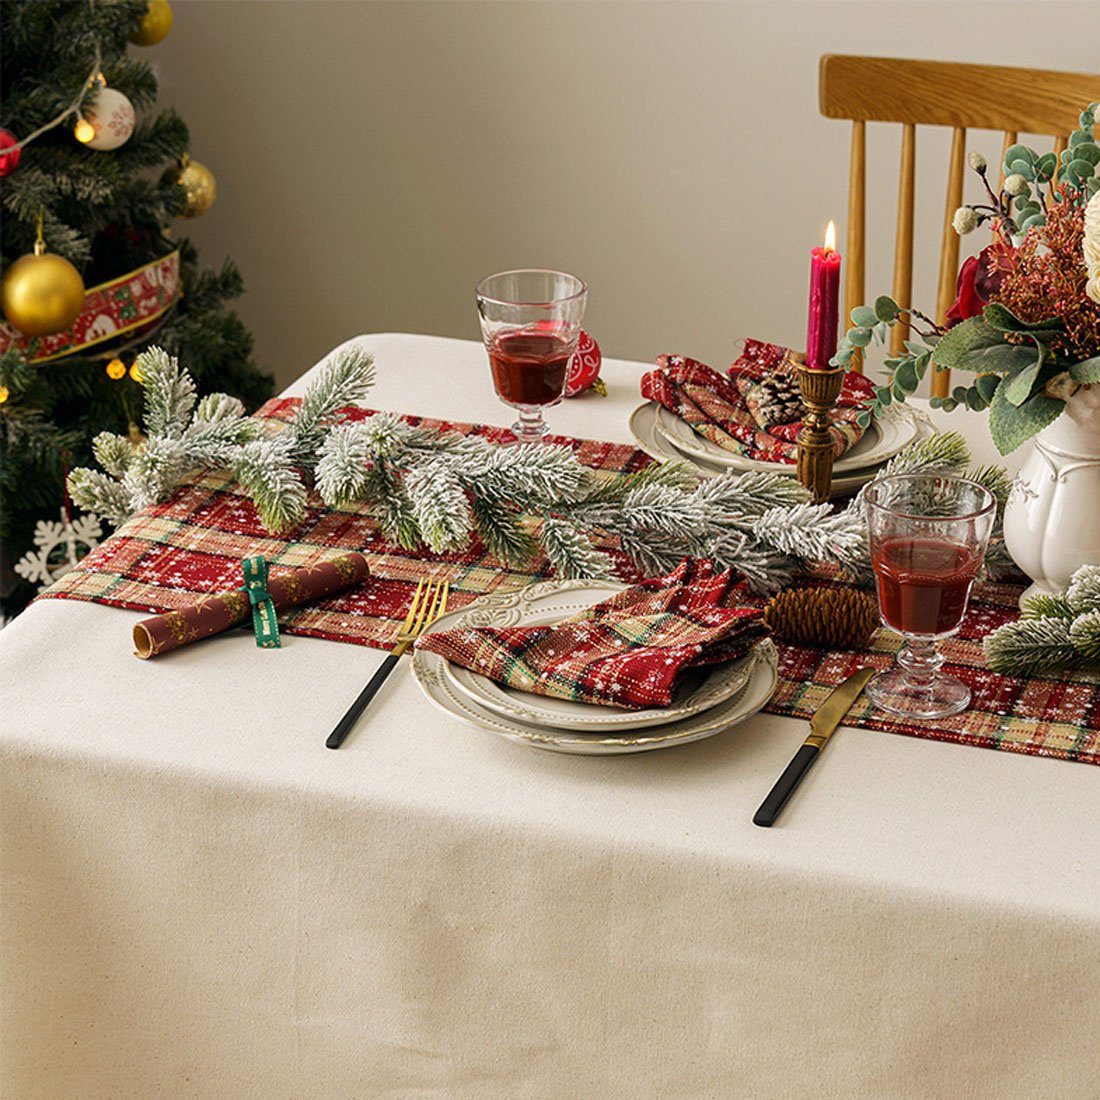 DÖRÖY Tischläufer Weihnachtsdekoration Tischläufer, festliche 40*200cm Tischfahnen bedruckter